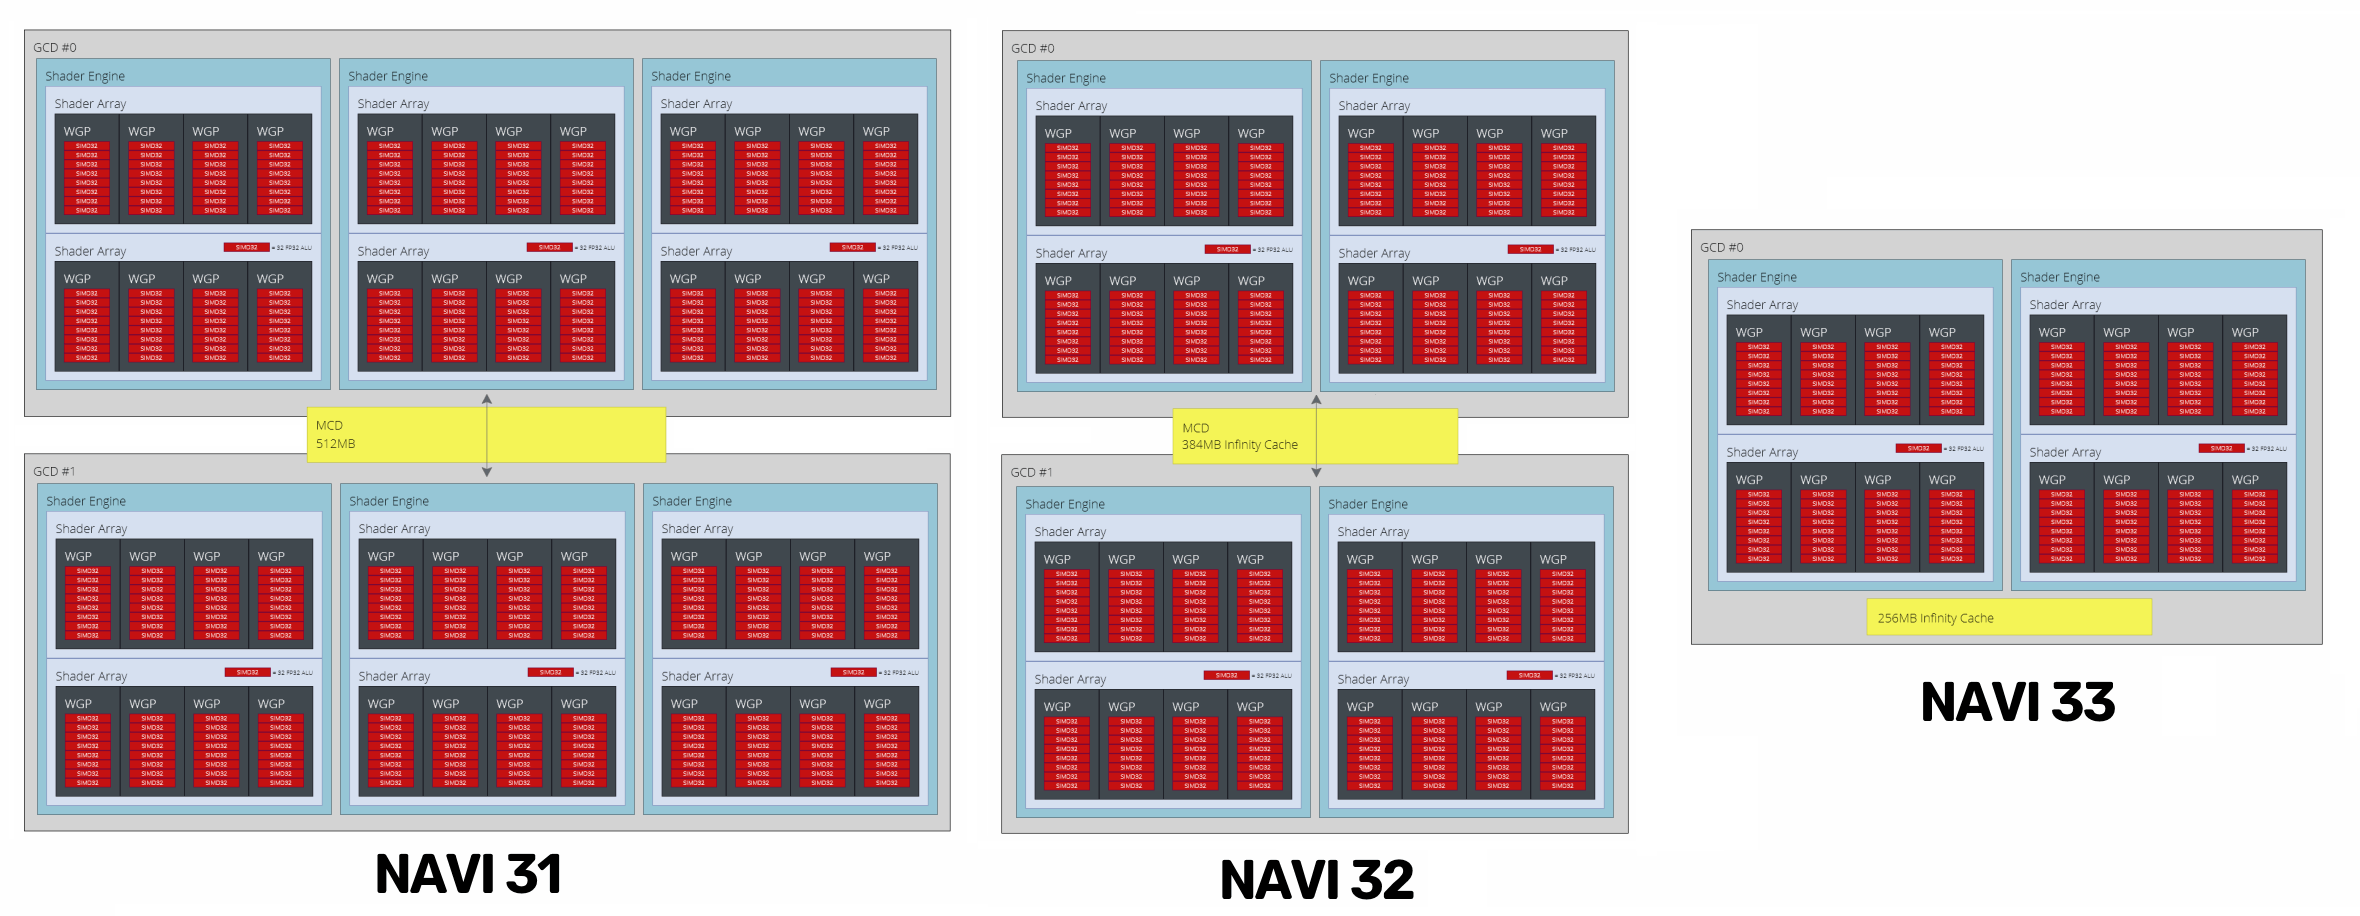 AMD-NAVI-3X-GPUs_new_work.png